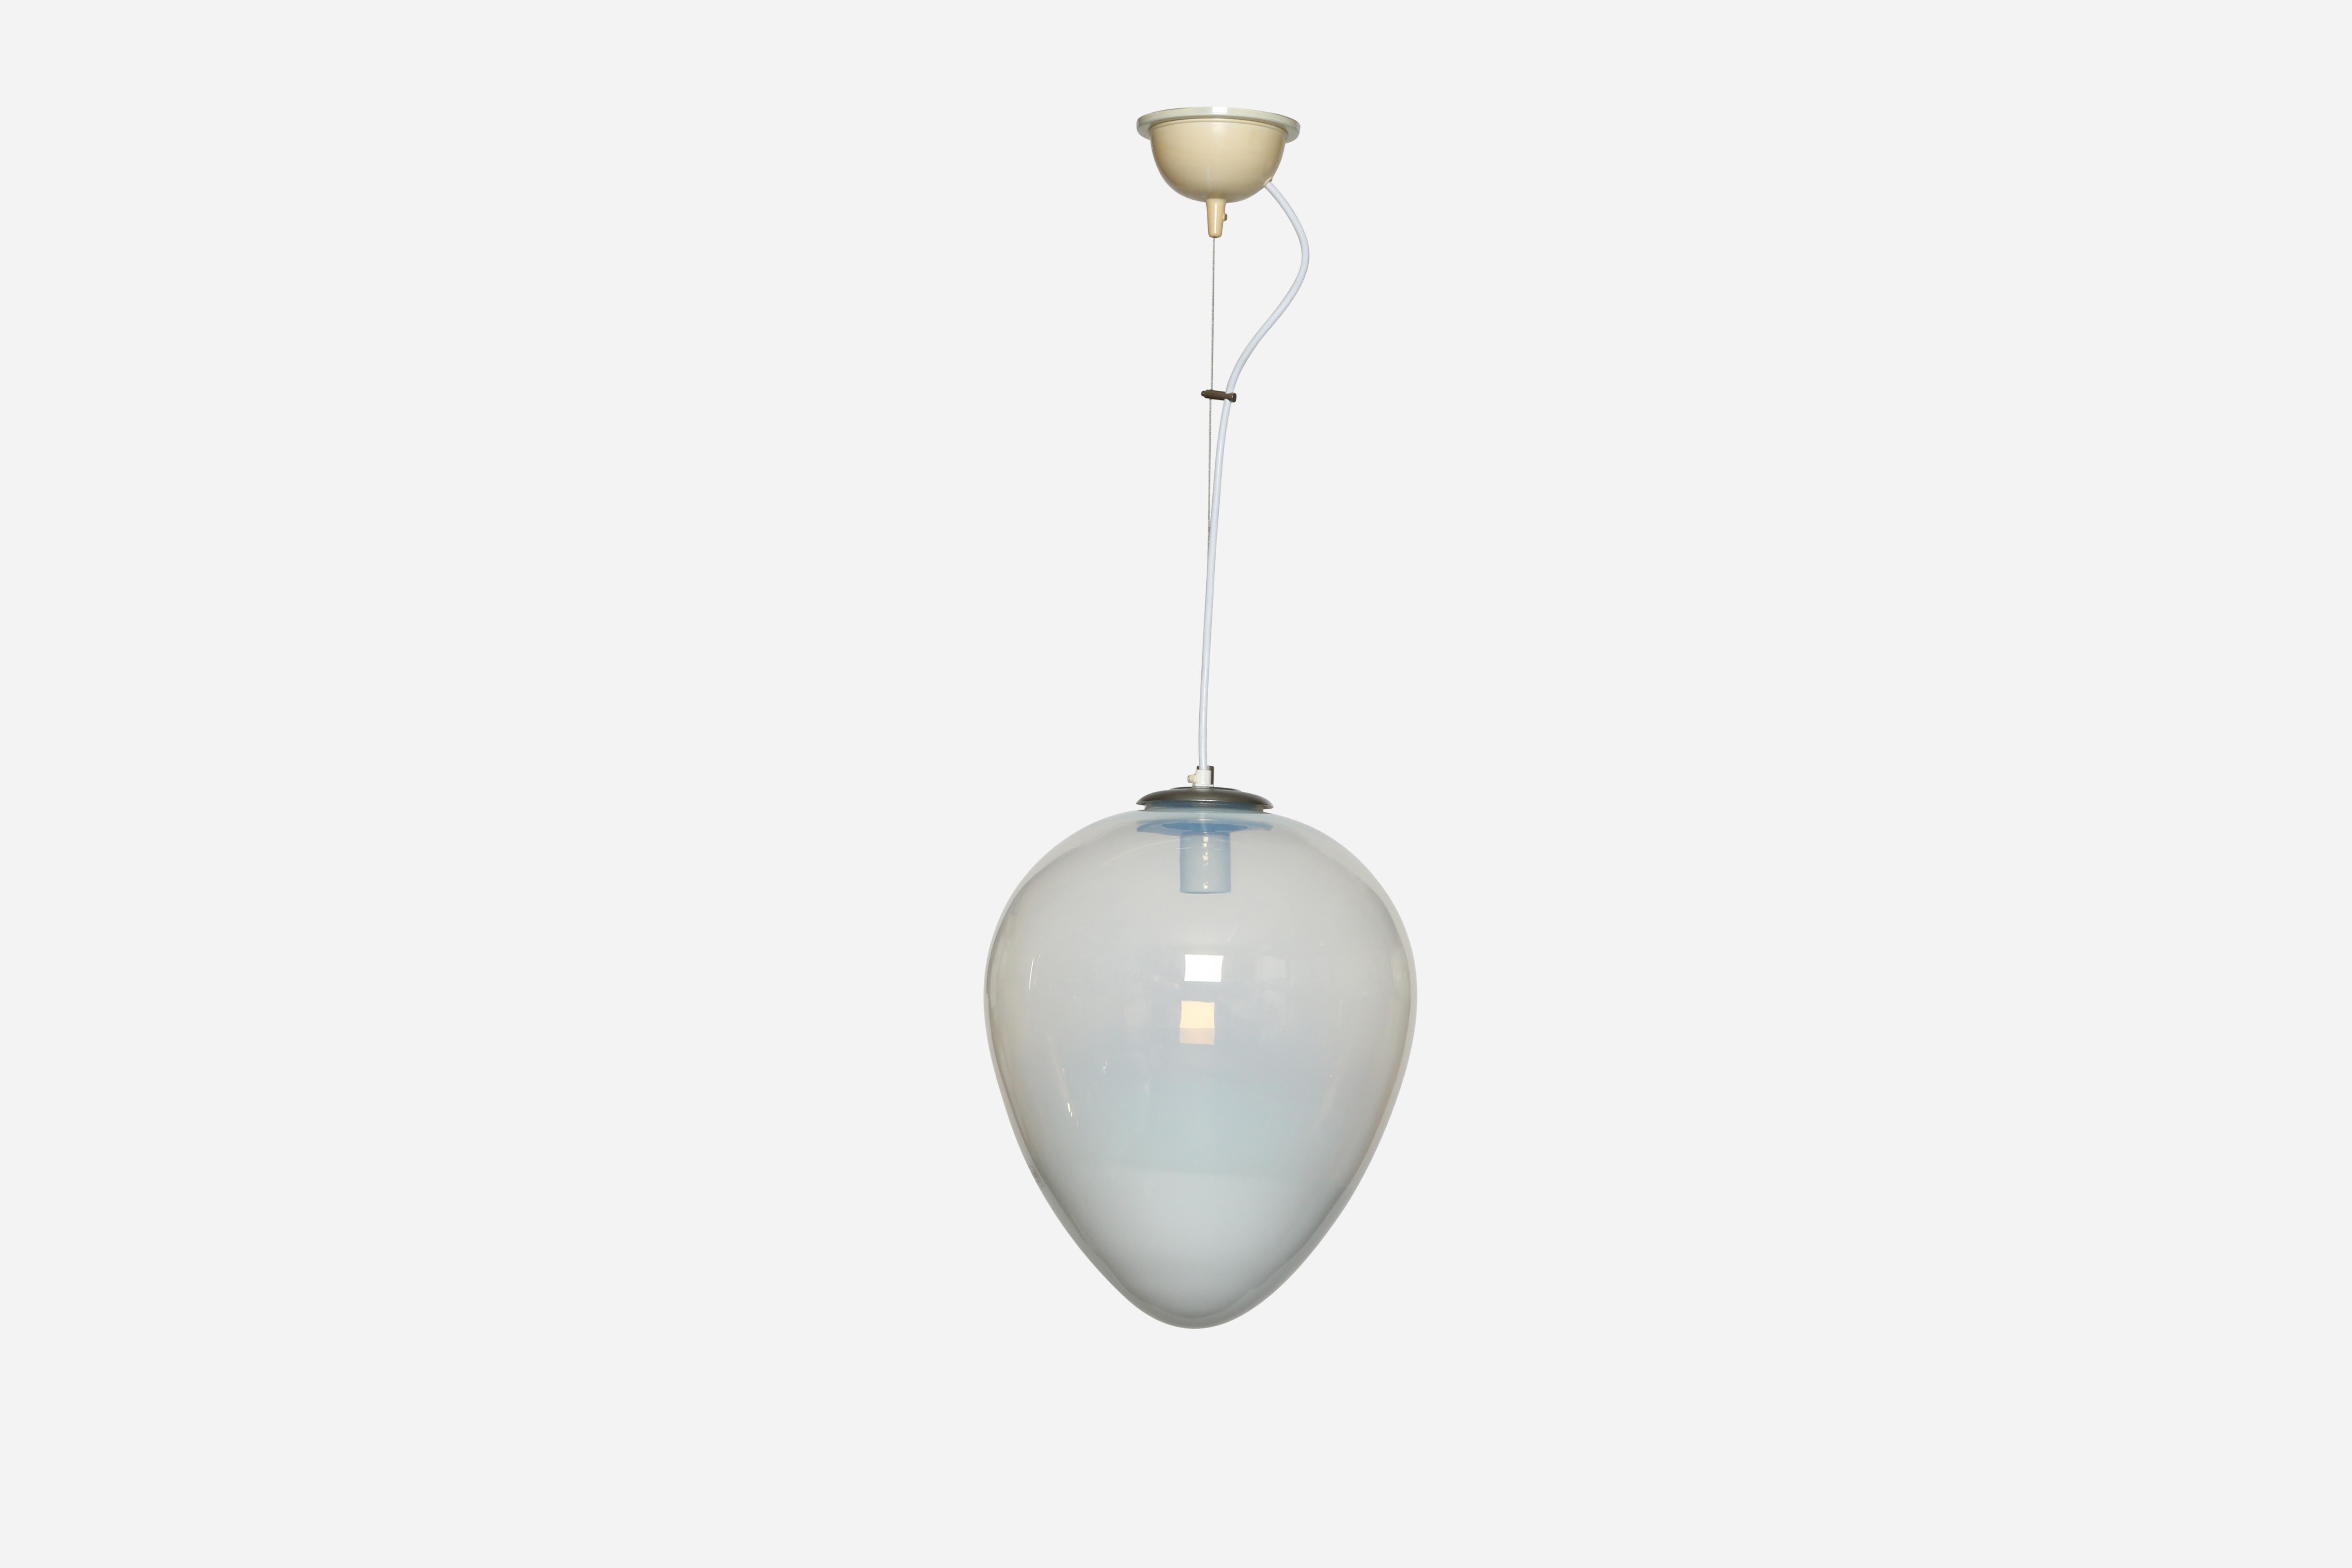 Suspension de plafond en verre de Murano par Leucos.
Fabriqué en Italie dans les années 1970.
Verre soufflé à la main.
Rewired for US.
Fonctionne avec une ampoule à culot moyen.
La hauteur totale est réglable, elle peut être plus courte.
2